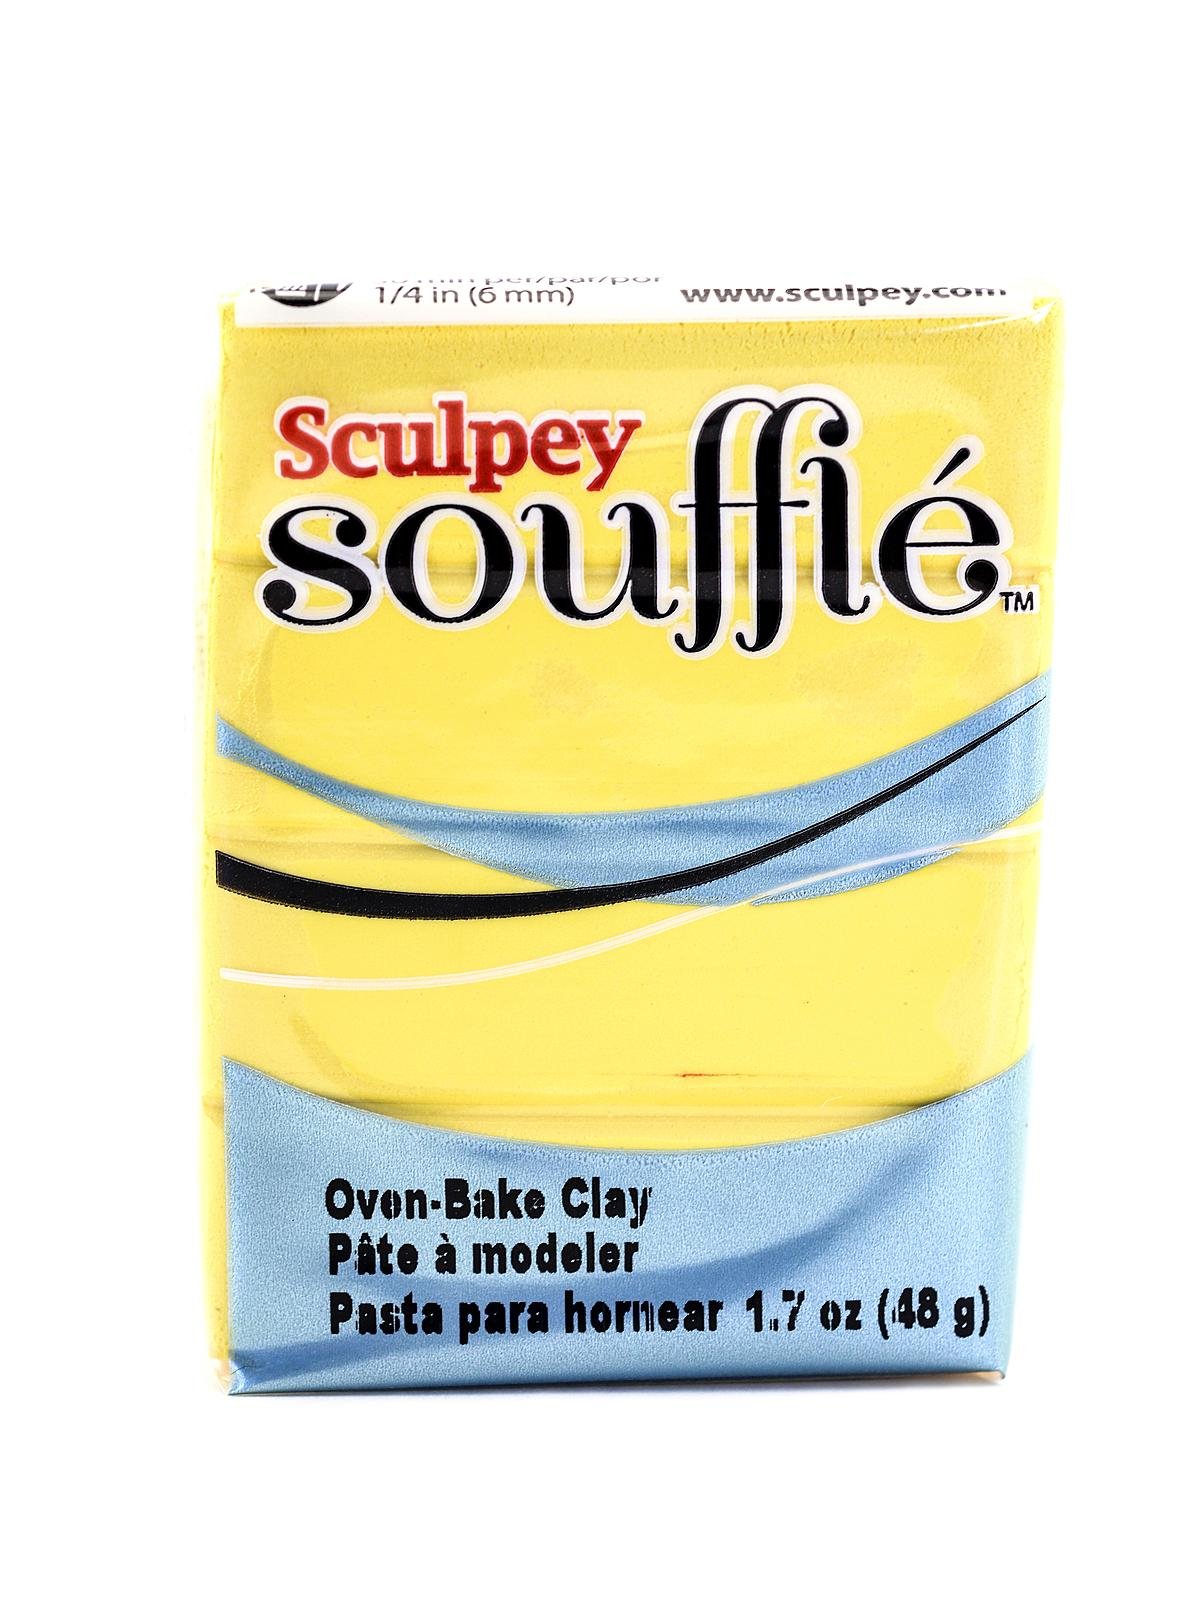 Sculpey® Souffle Polymer Clay